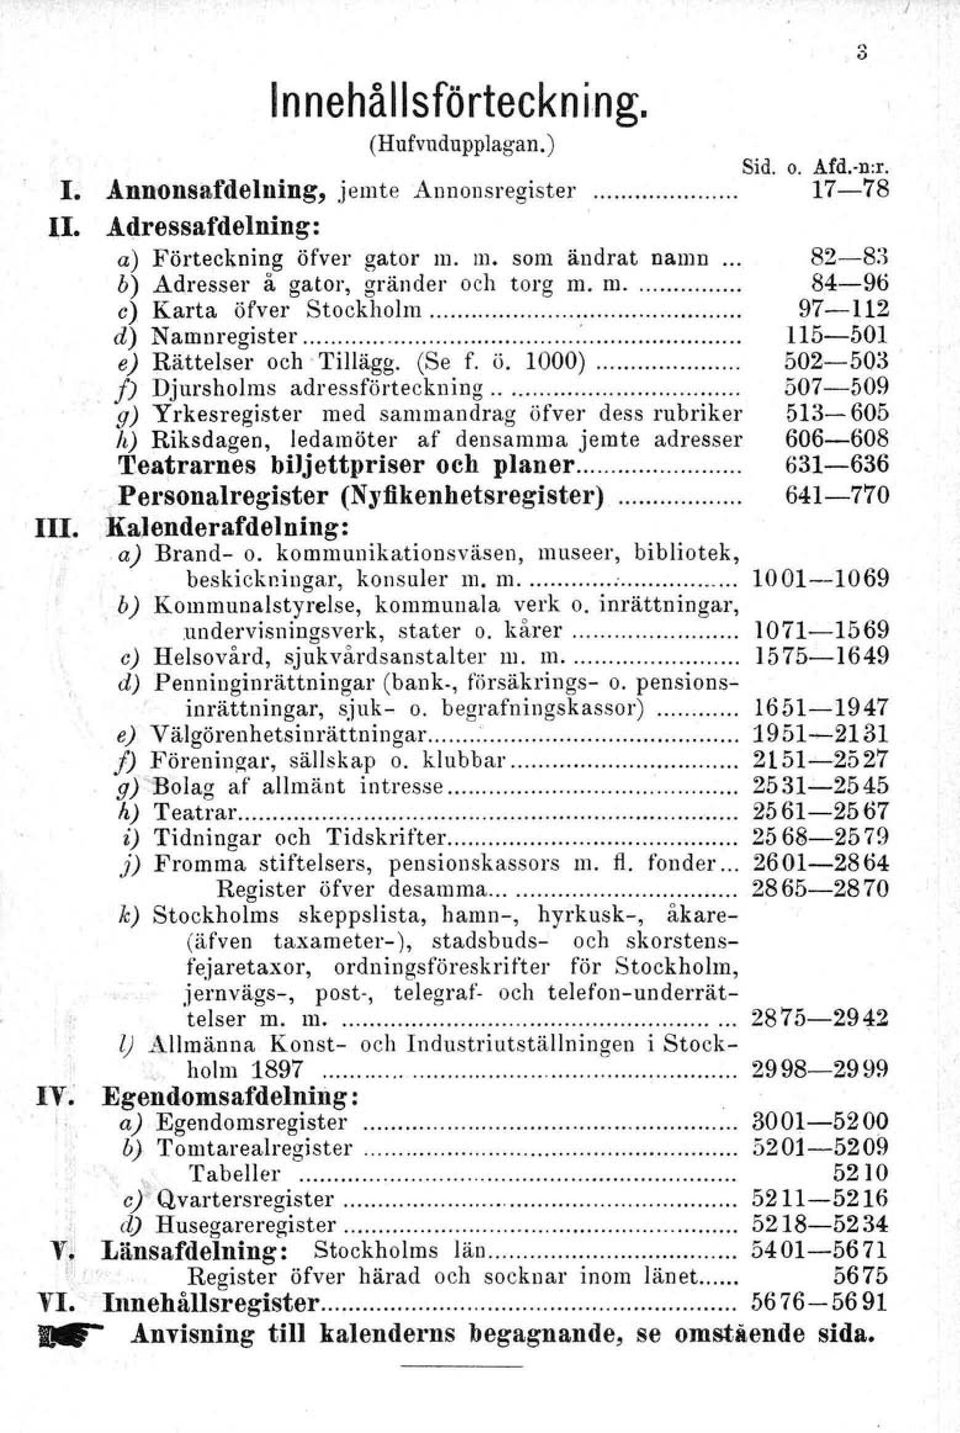 502-503, f) Djursholms adressförteckning.